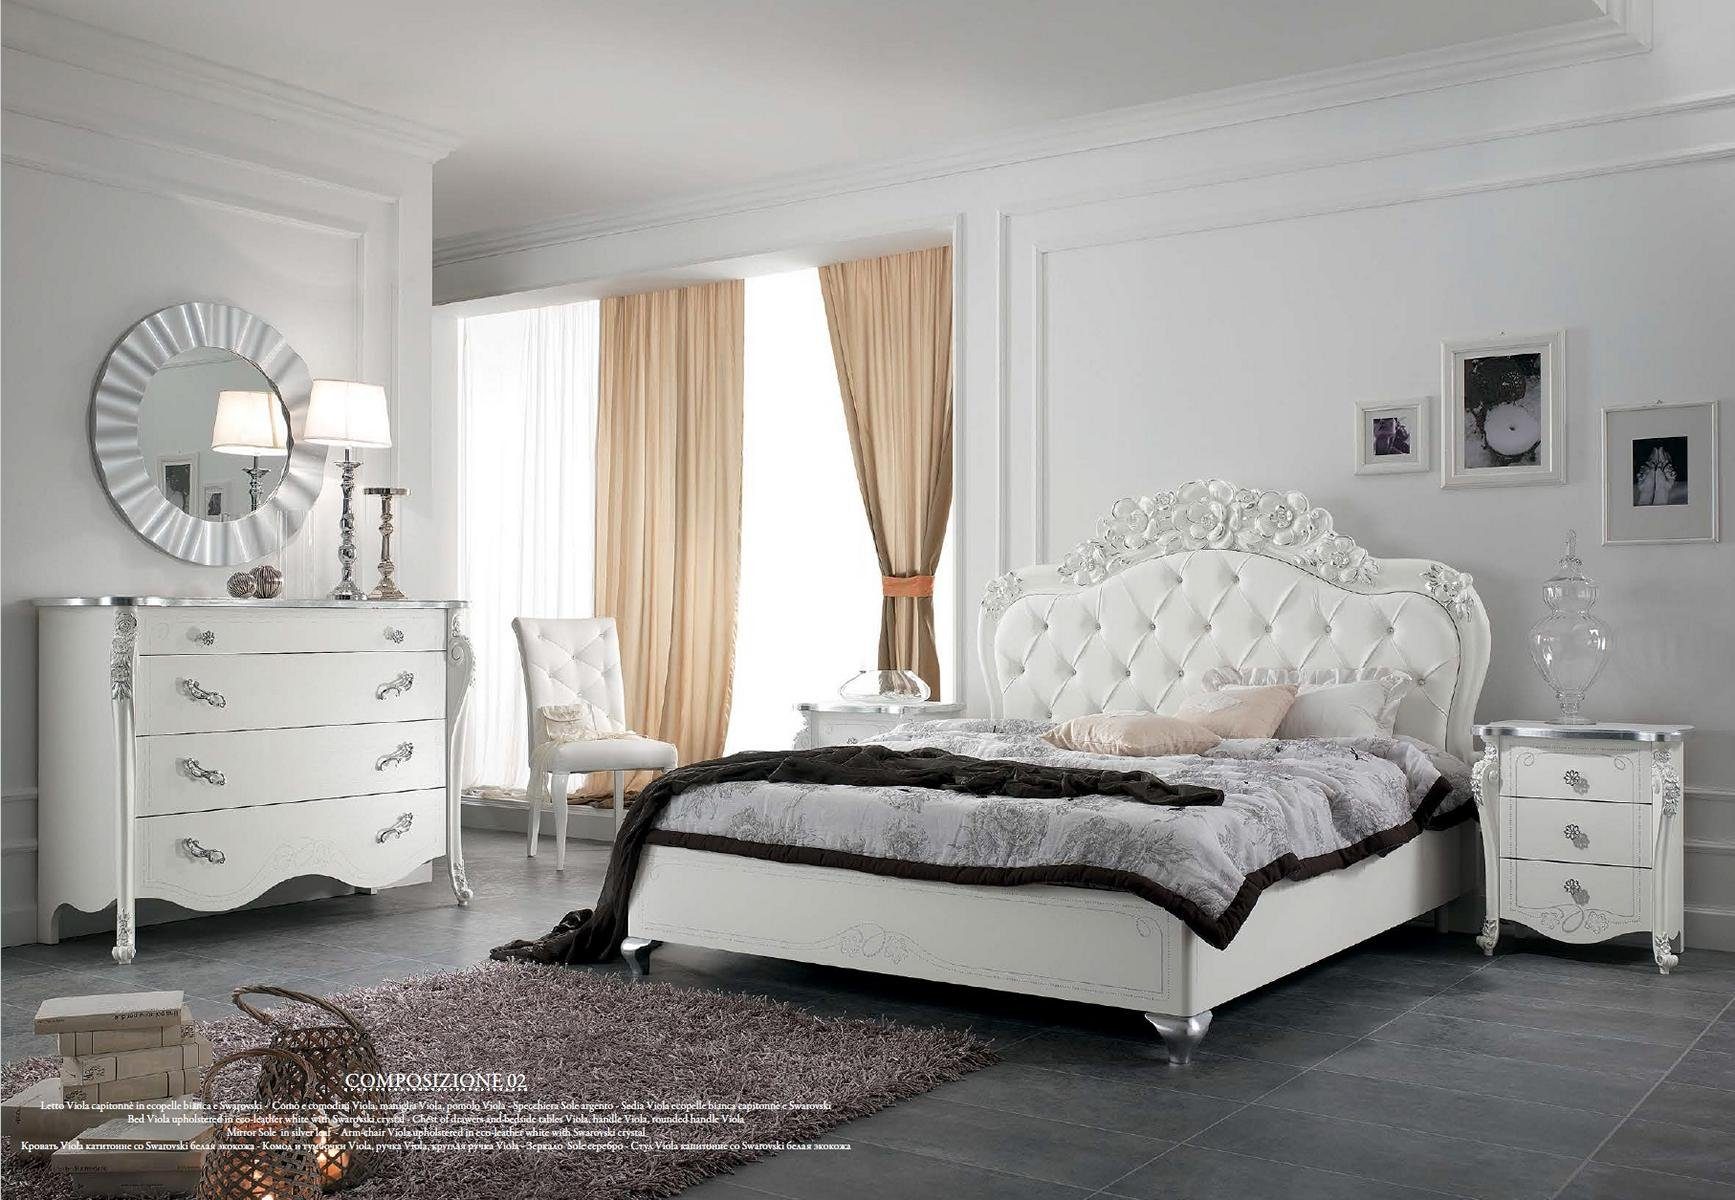 JVmoebel Bett Bett Stil Betten (Bett) Möbel Design Italienische Klassische déco Holz Art